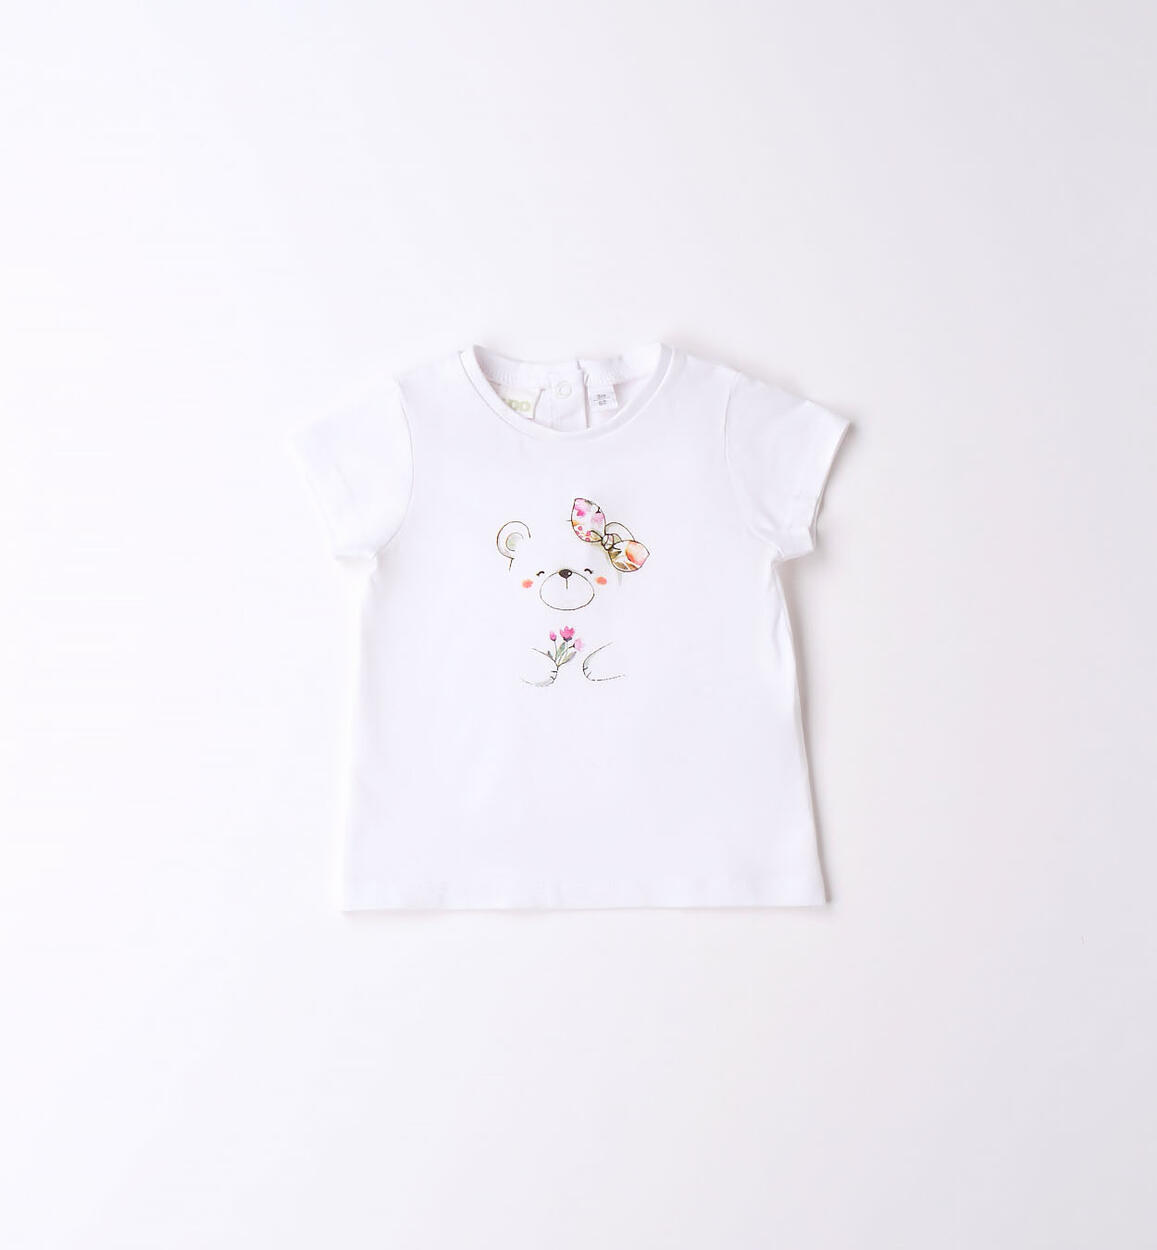 T-shirt neonata varie stampe 100% cotone ROSA iDO